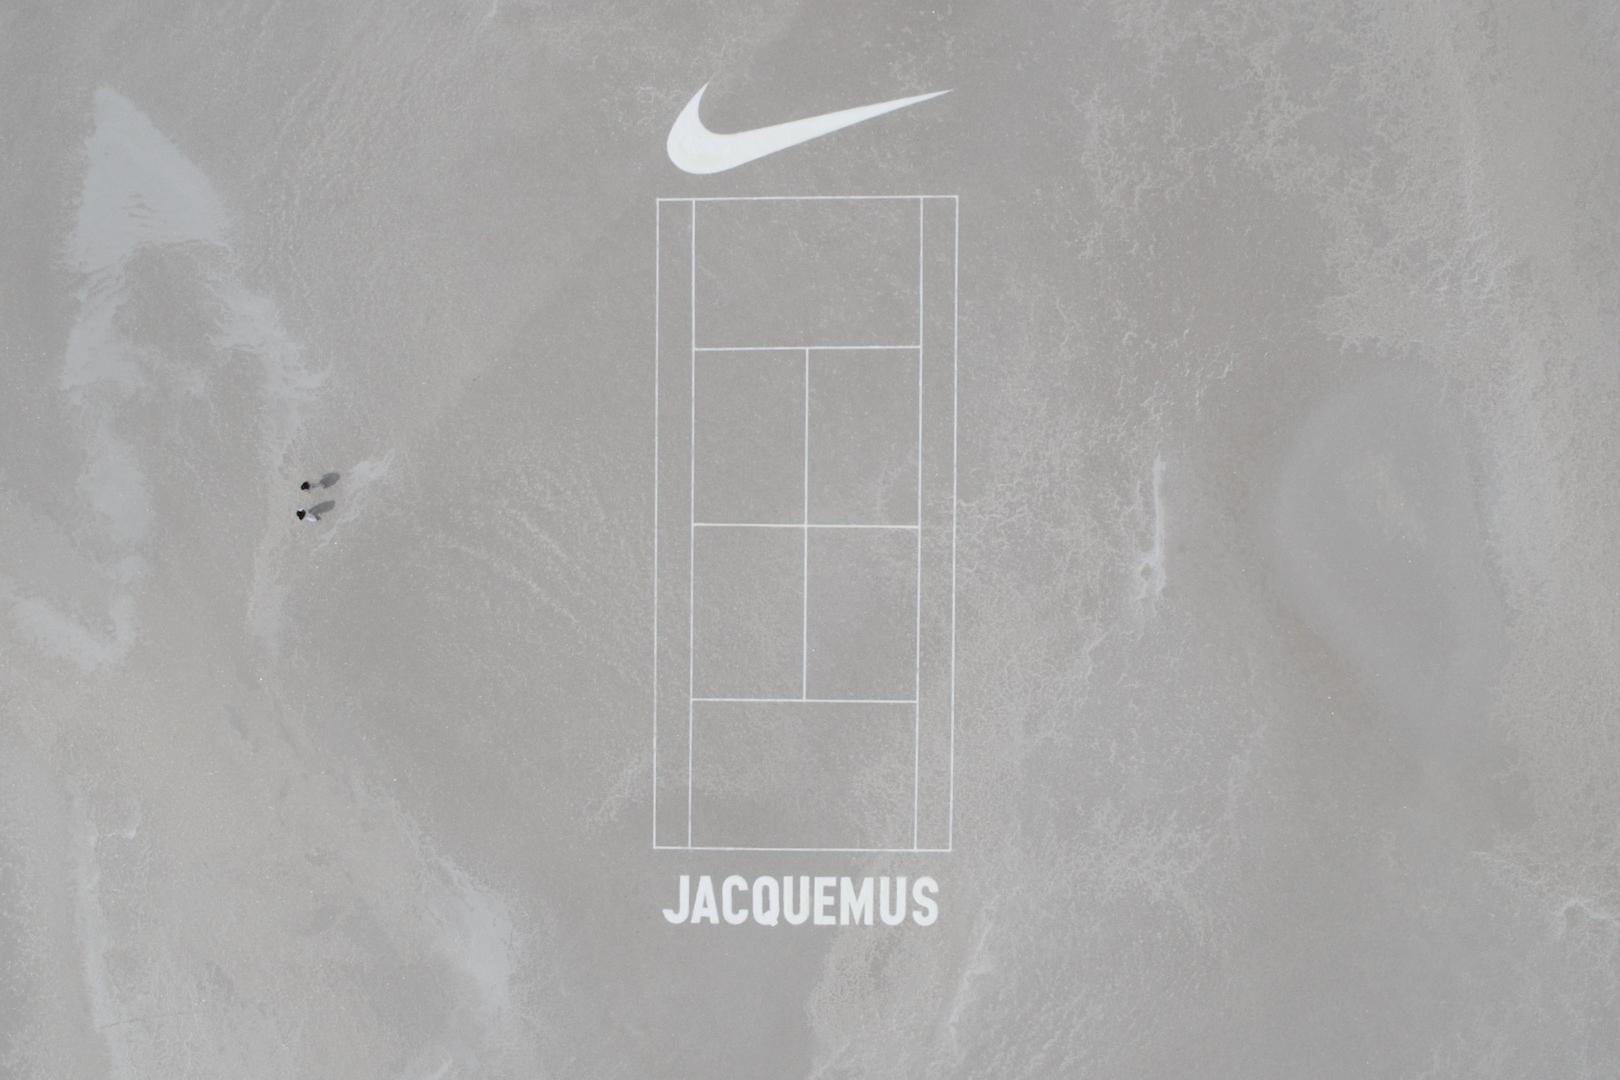 Jacquemus x Nike Air Humara 